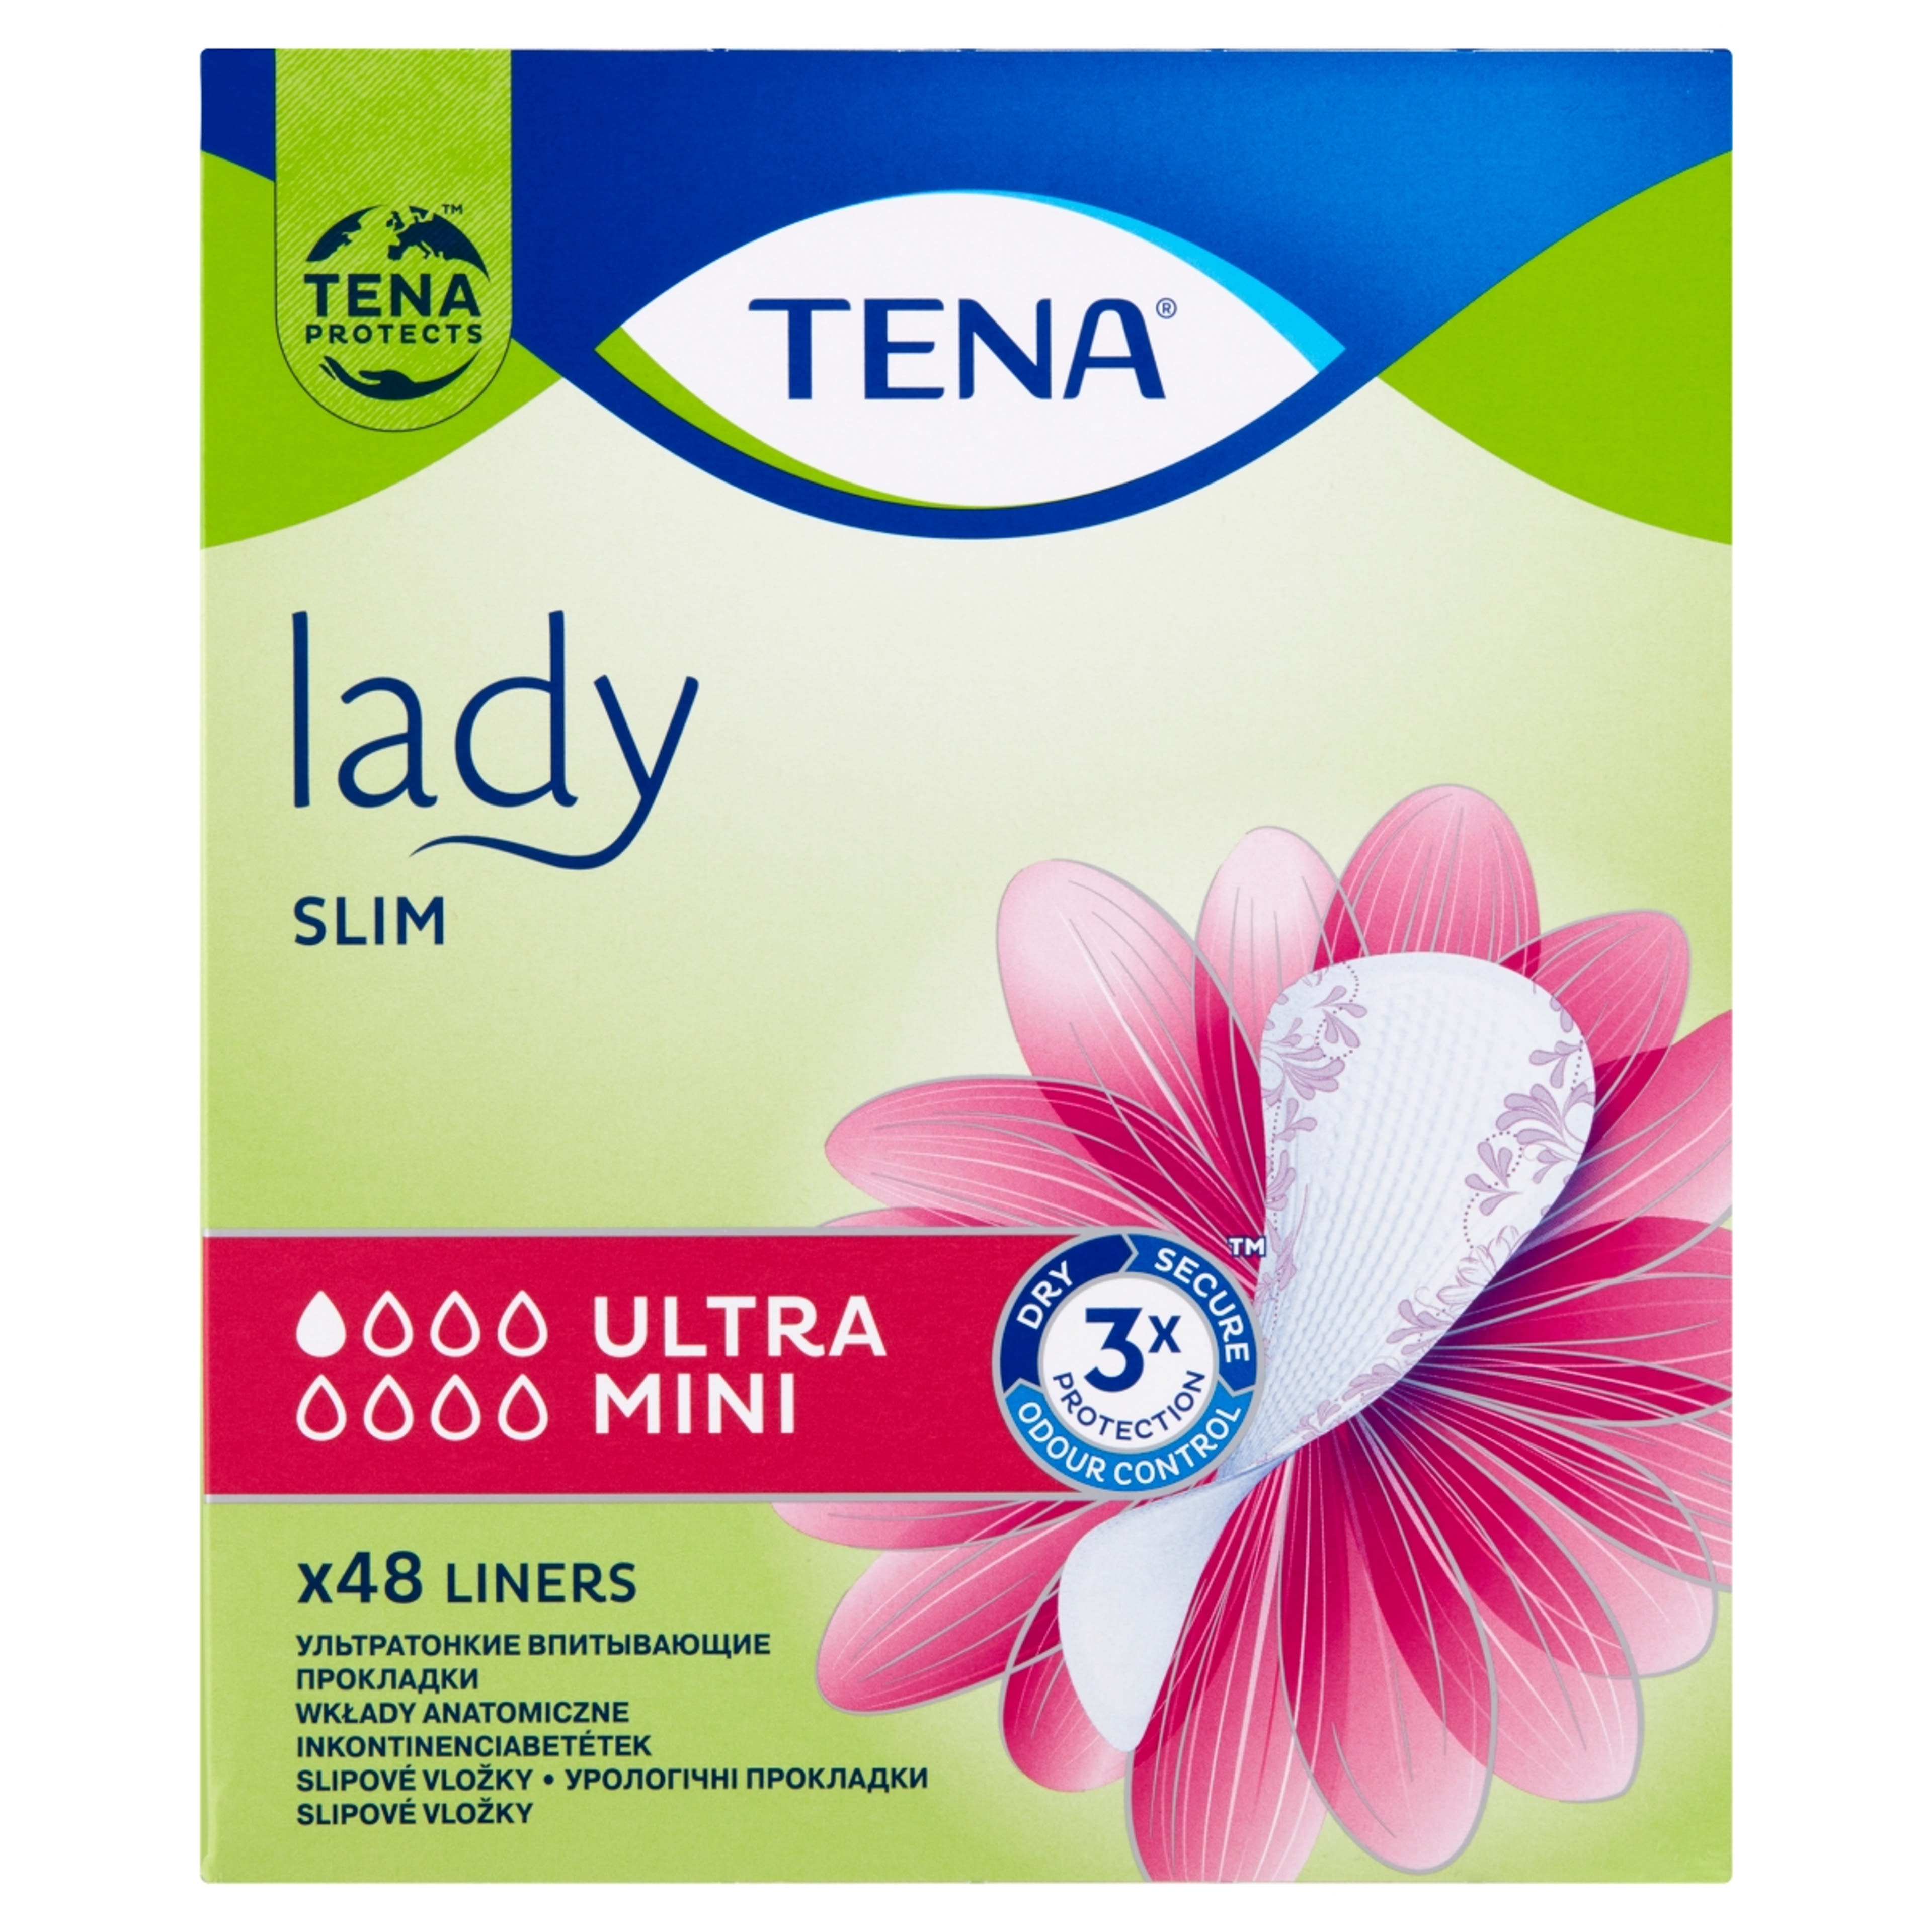 Tena Lady inkontinencia betét ultra mini slim - 1 db-1